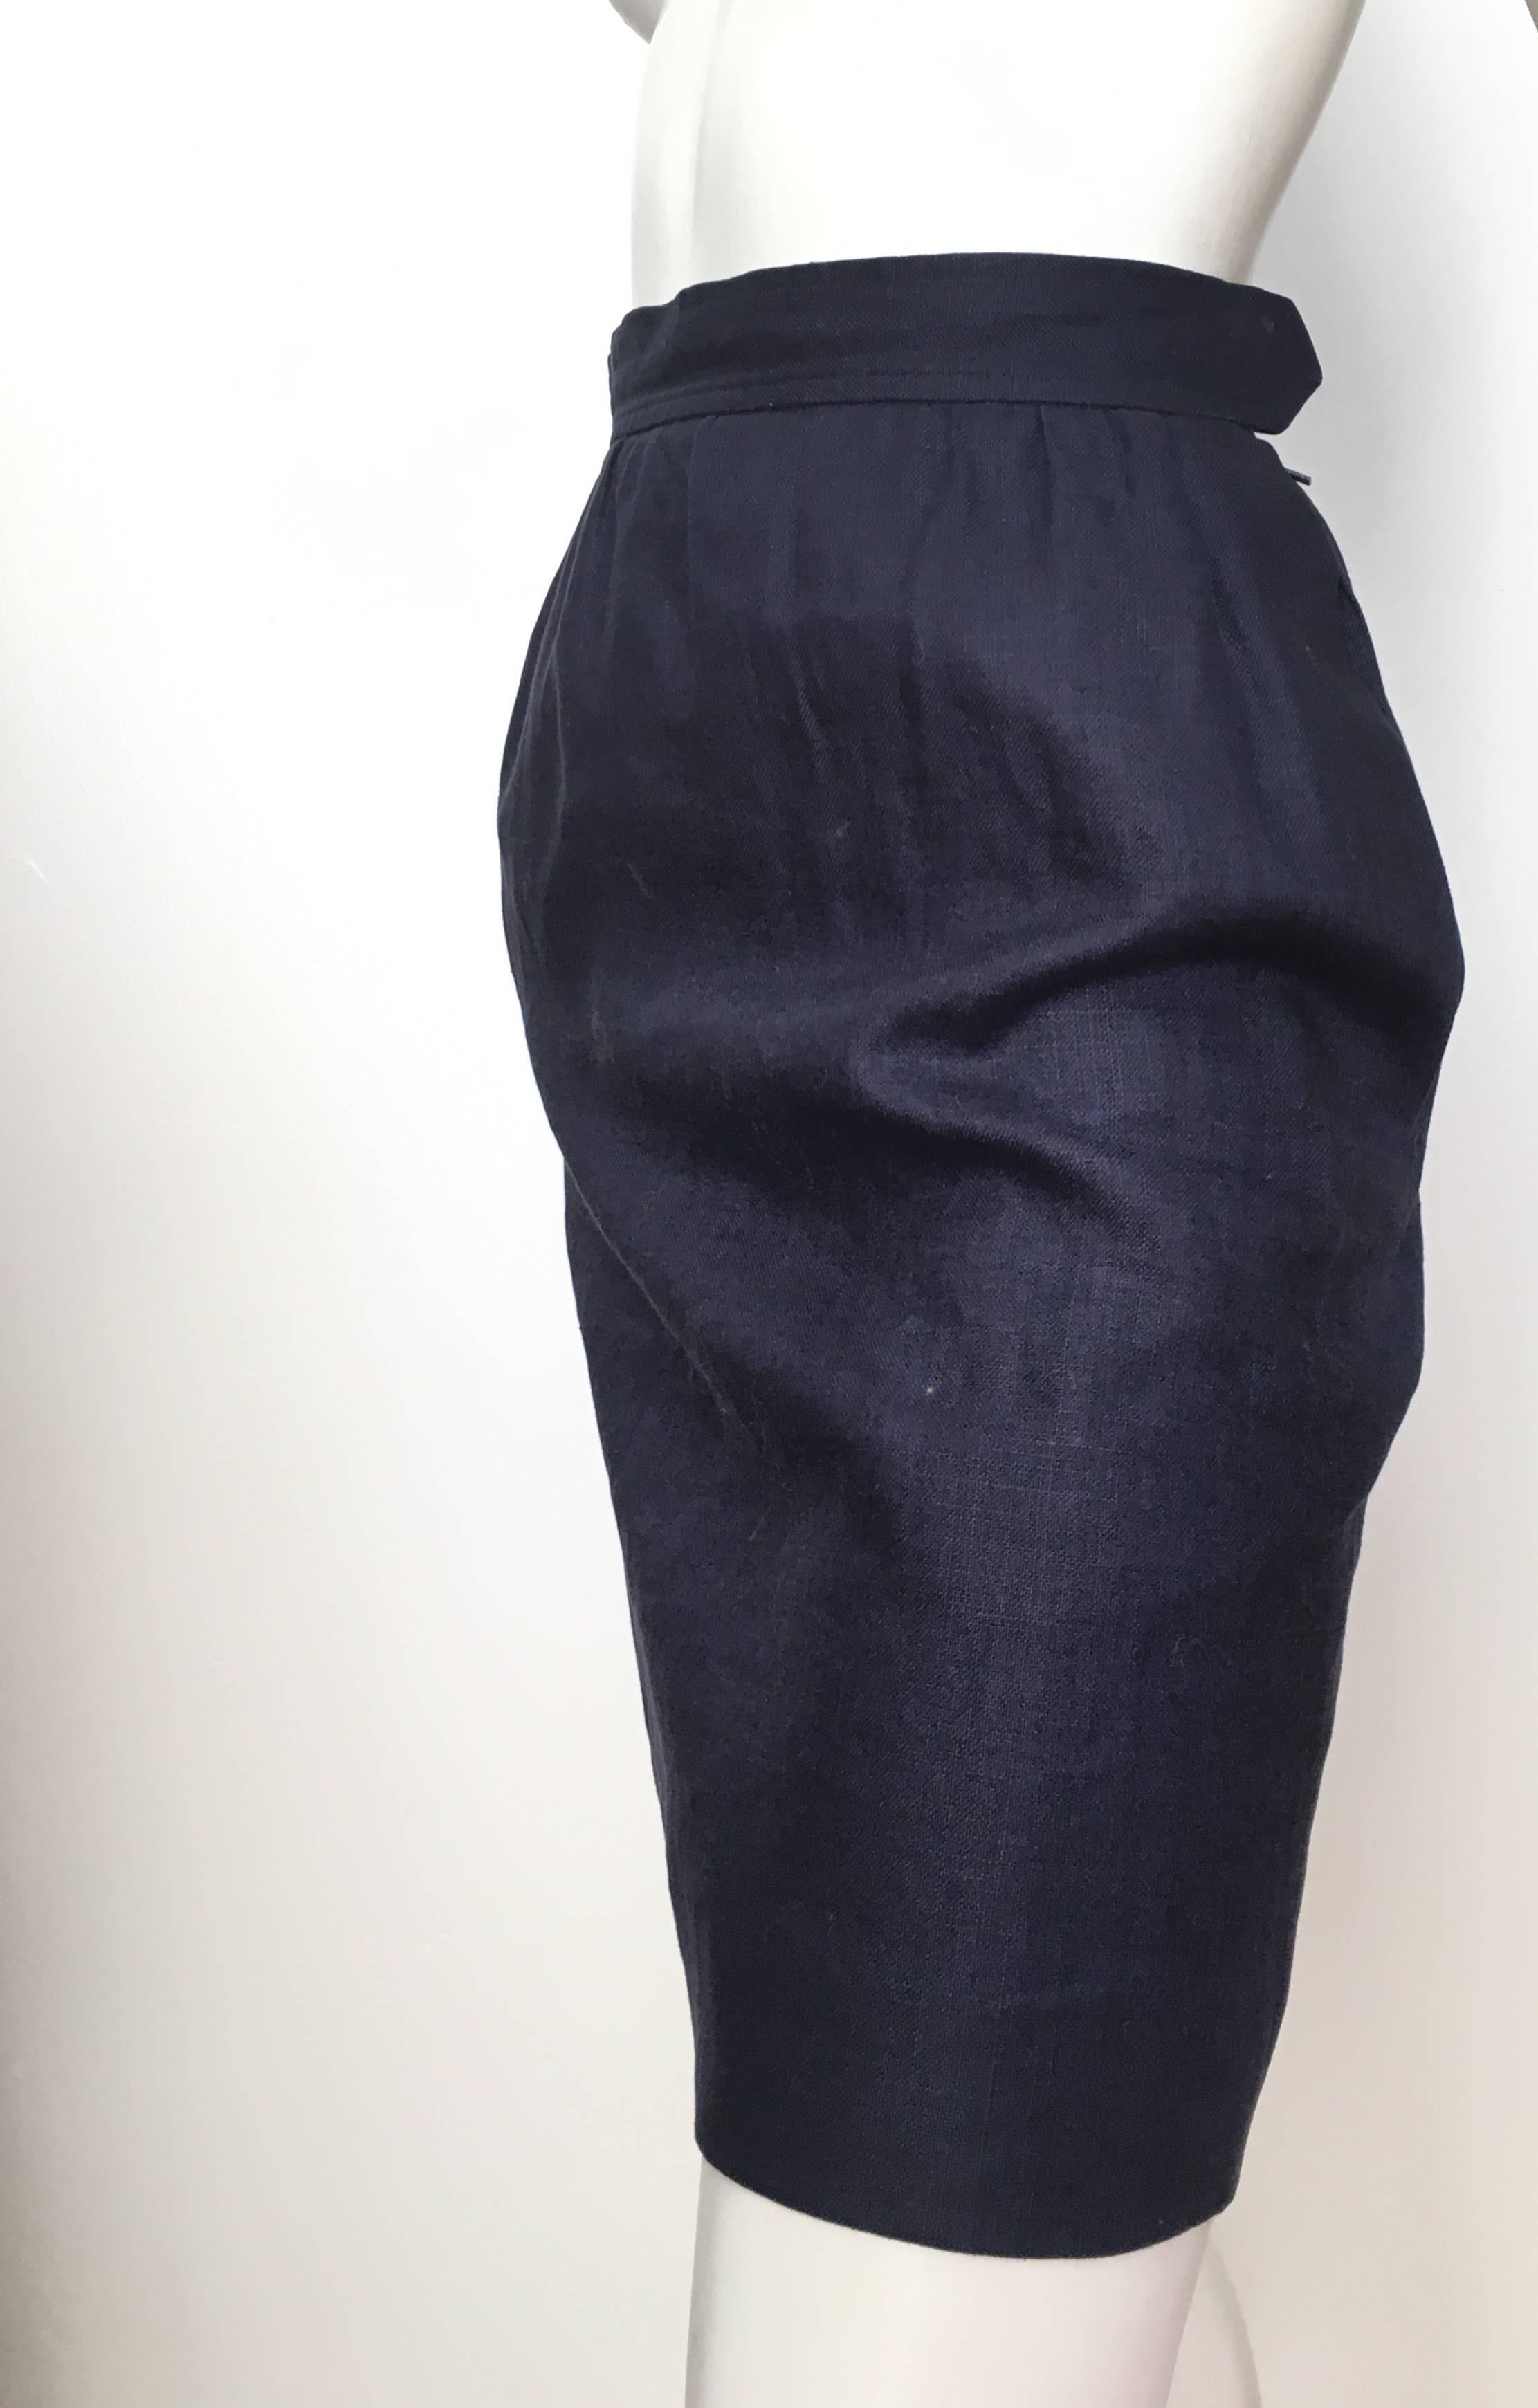 Saint Laurent Rive Gauche 1980s Navy Linen Pencil Skirt with Pockets Size 4. For Sale 3